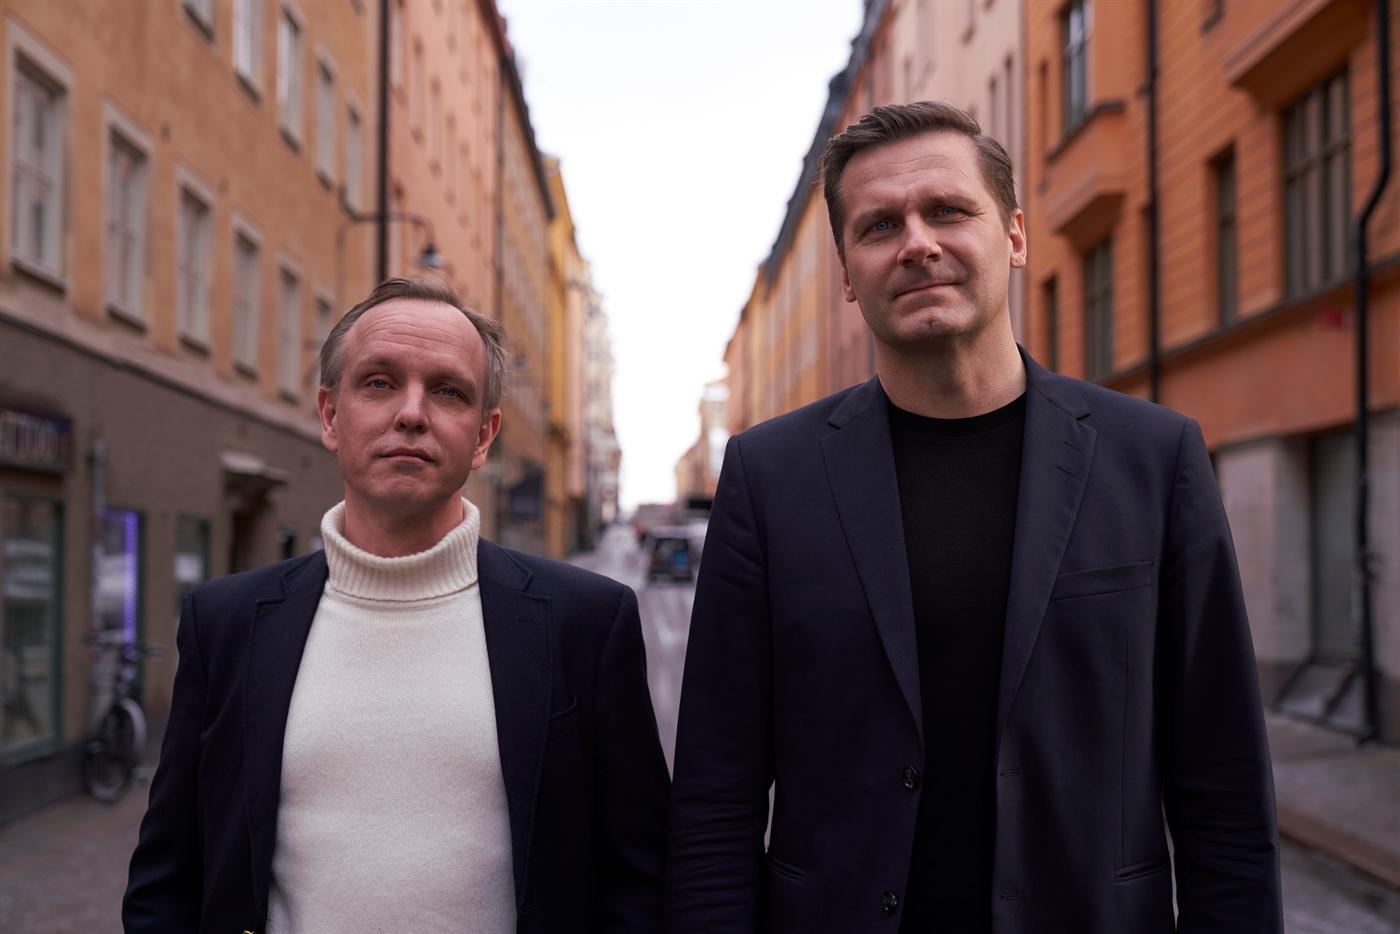 Mathias Ståhle och Jani Pirttisalo Sallinen, grävande reportrar på Svenska Dagbladet, spårar i ”Vapensmederna” hur vapenmarknaden ser ut i Sverige.